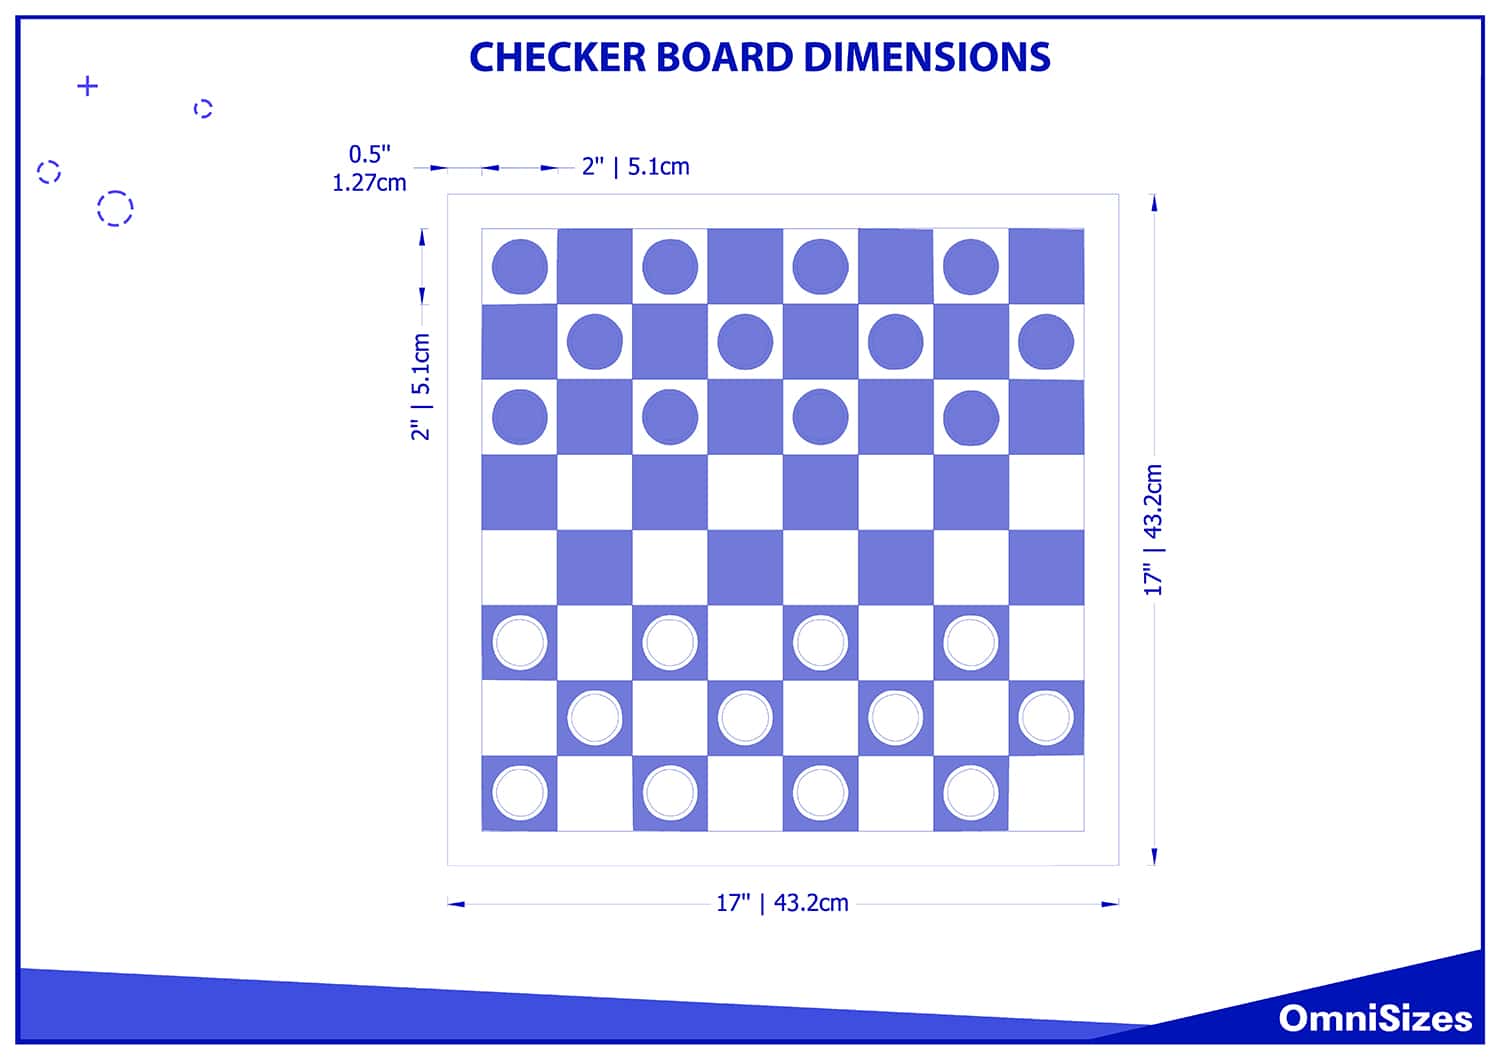 Checkerboard dimensions